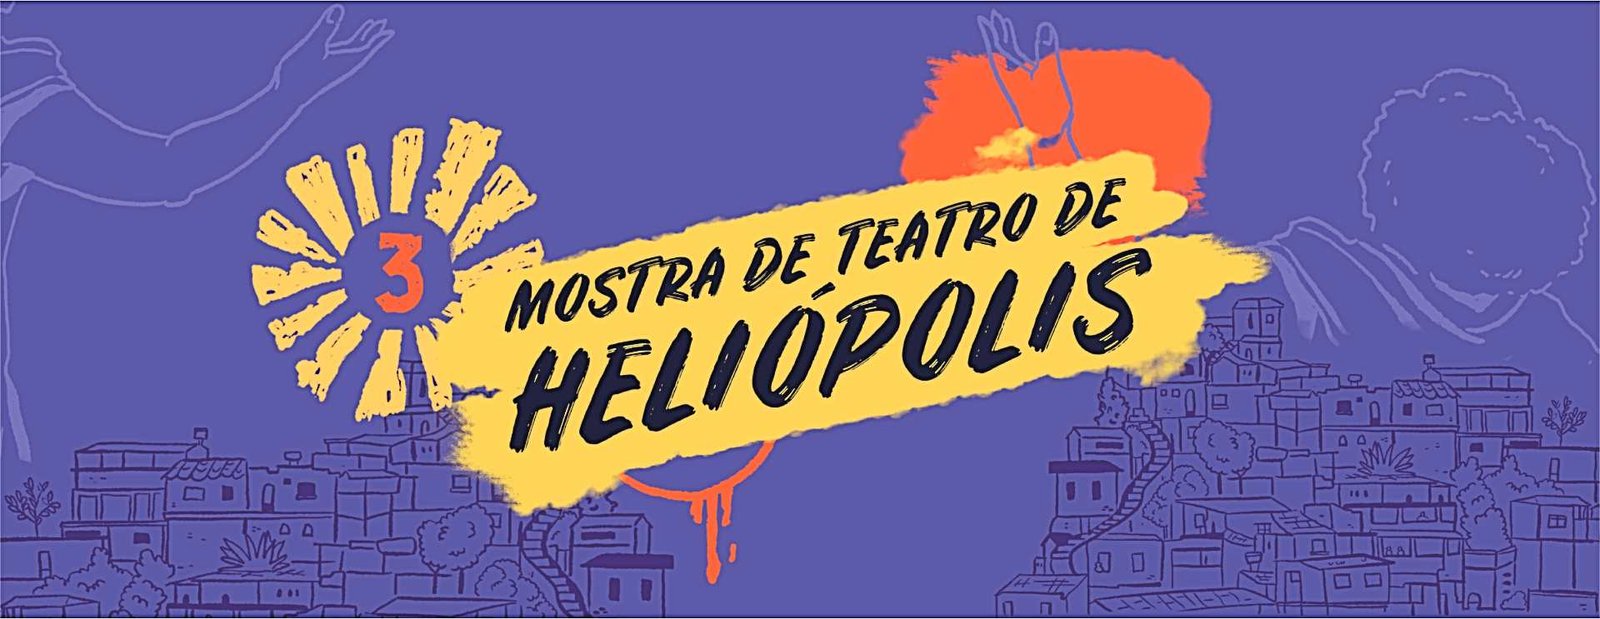 Mostra de Teatro de Heliópolis